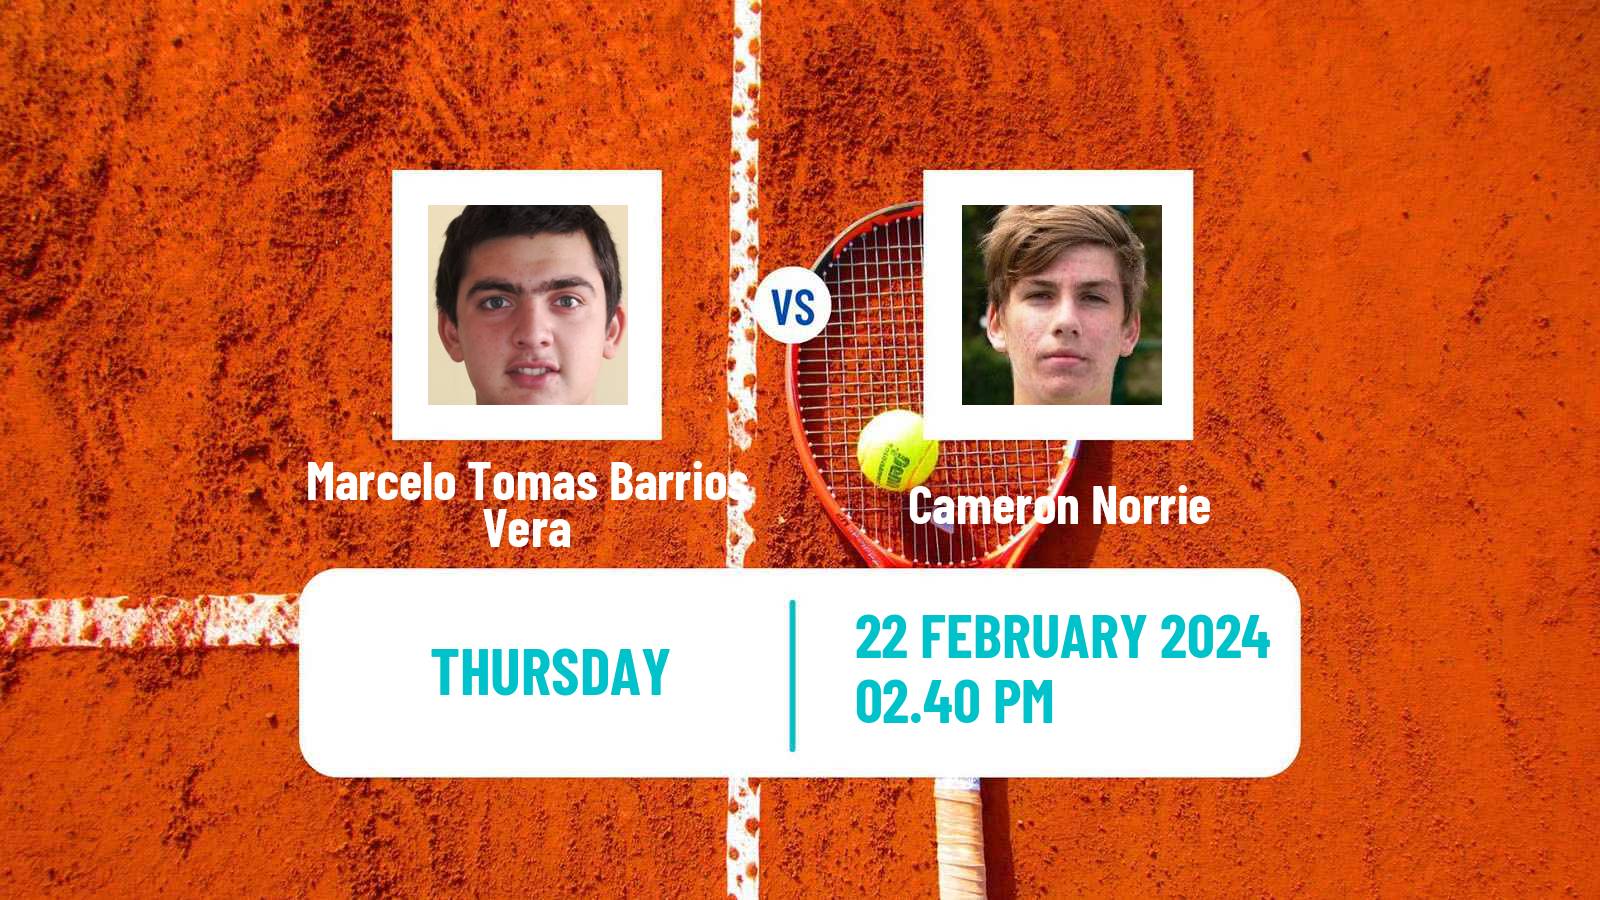 Tennis ATP Rio de Janeiro Marcelo Tomas Barrios Vera - Cameron Norrie